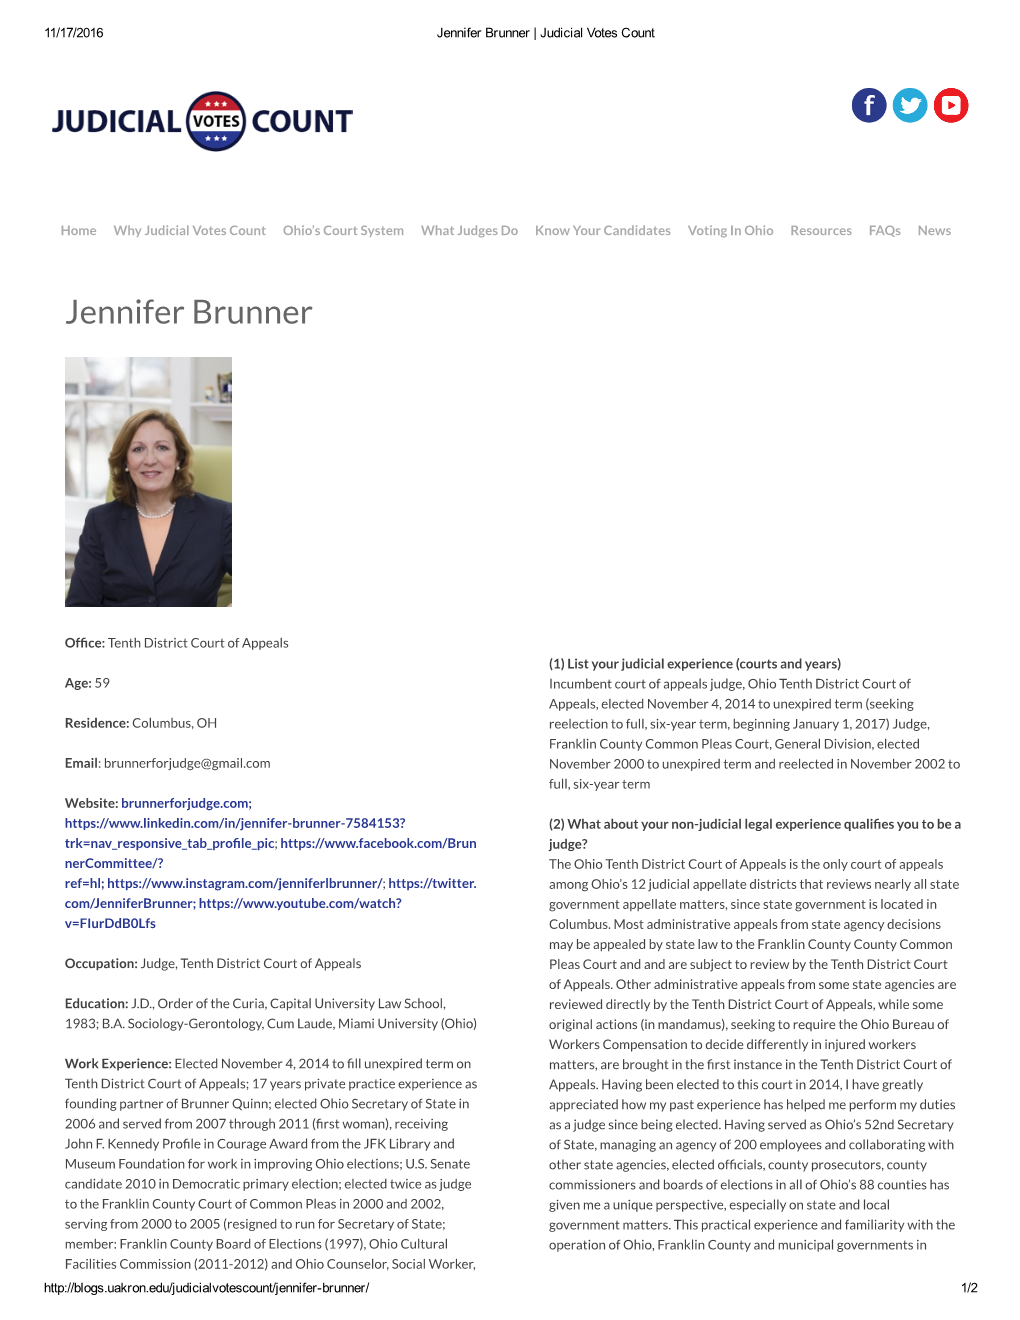 Jennifer Brunner | Judicial Votes Count